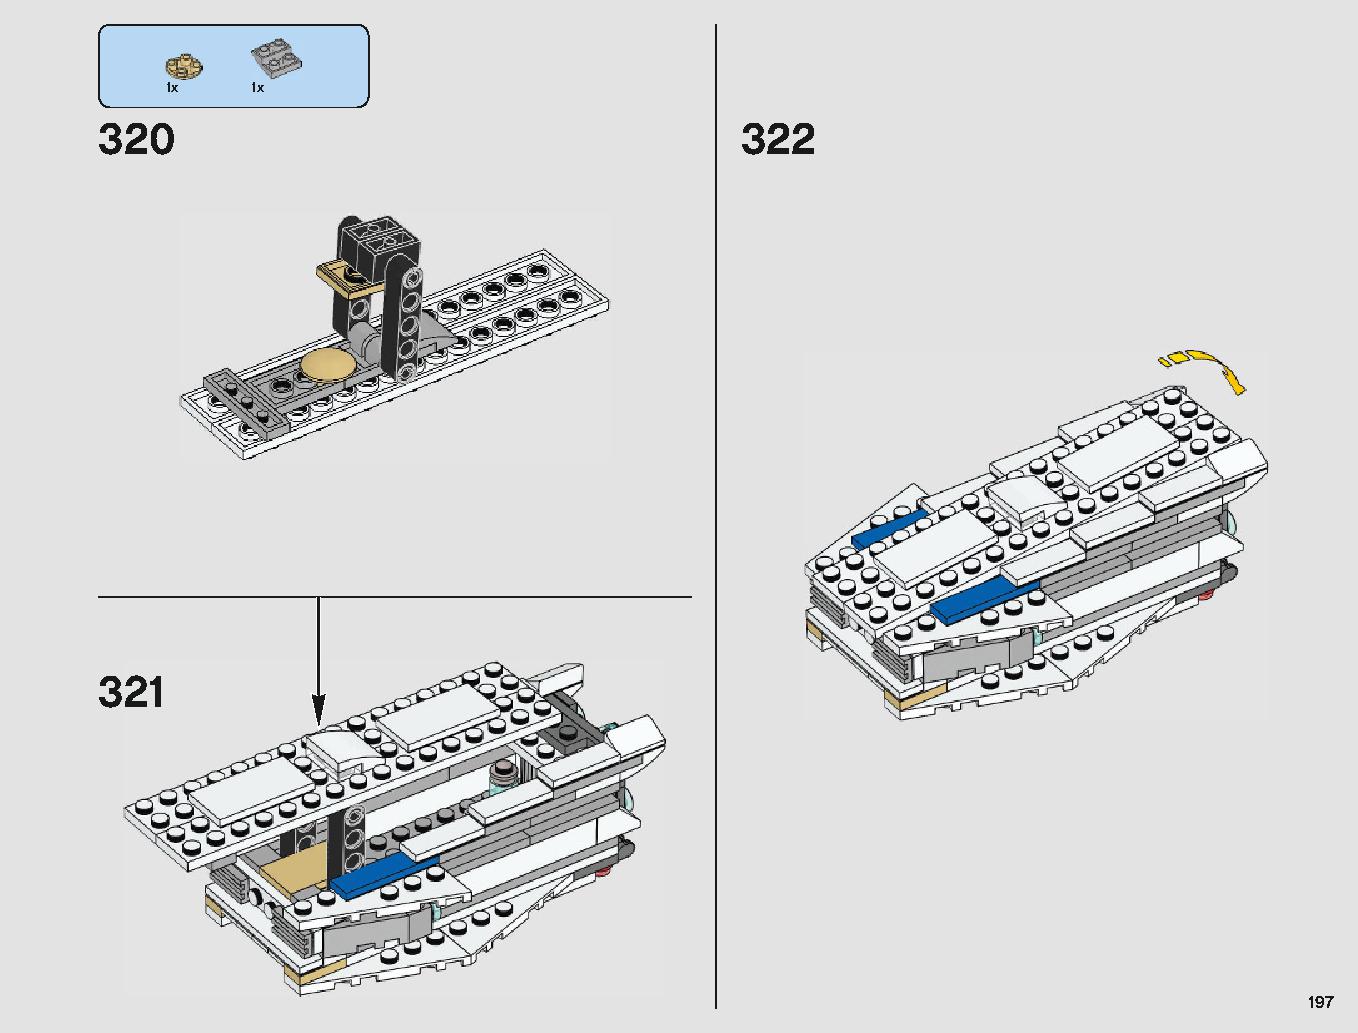 ミレニアム・ファルコン 75212 レゴの商品情報 レゴの説明書・組立方法 197 page